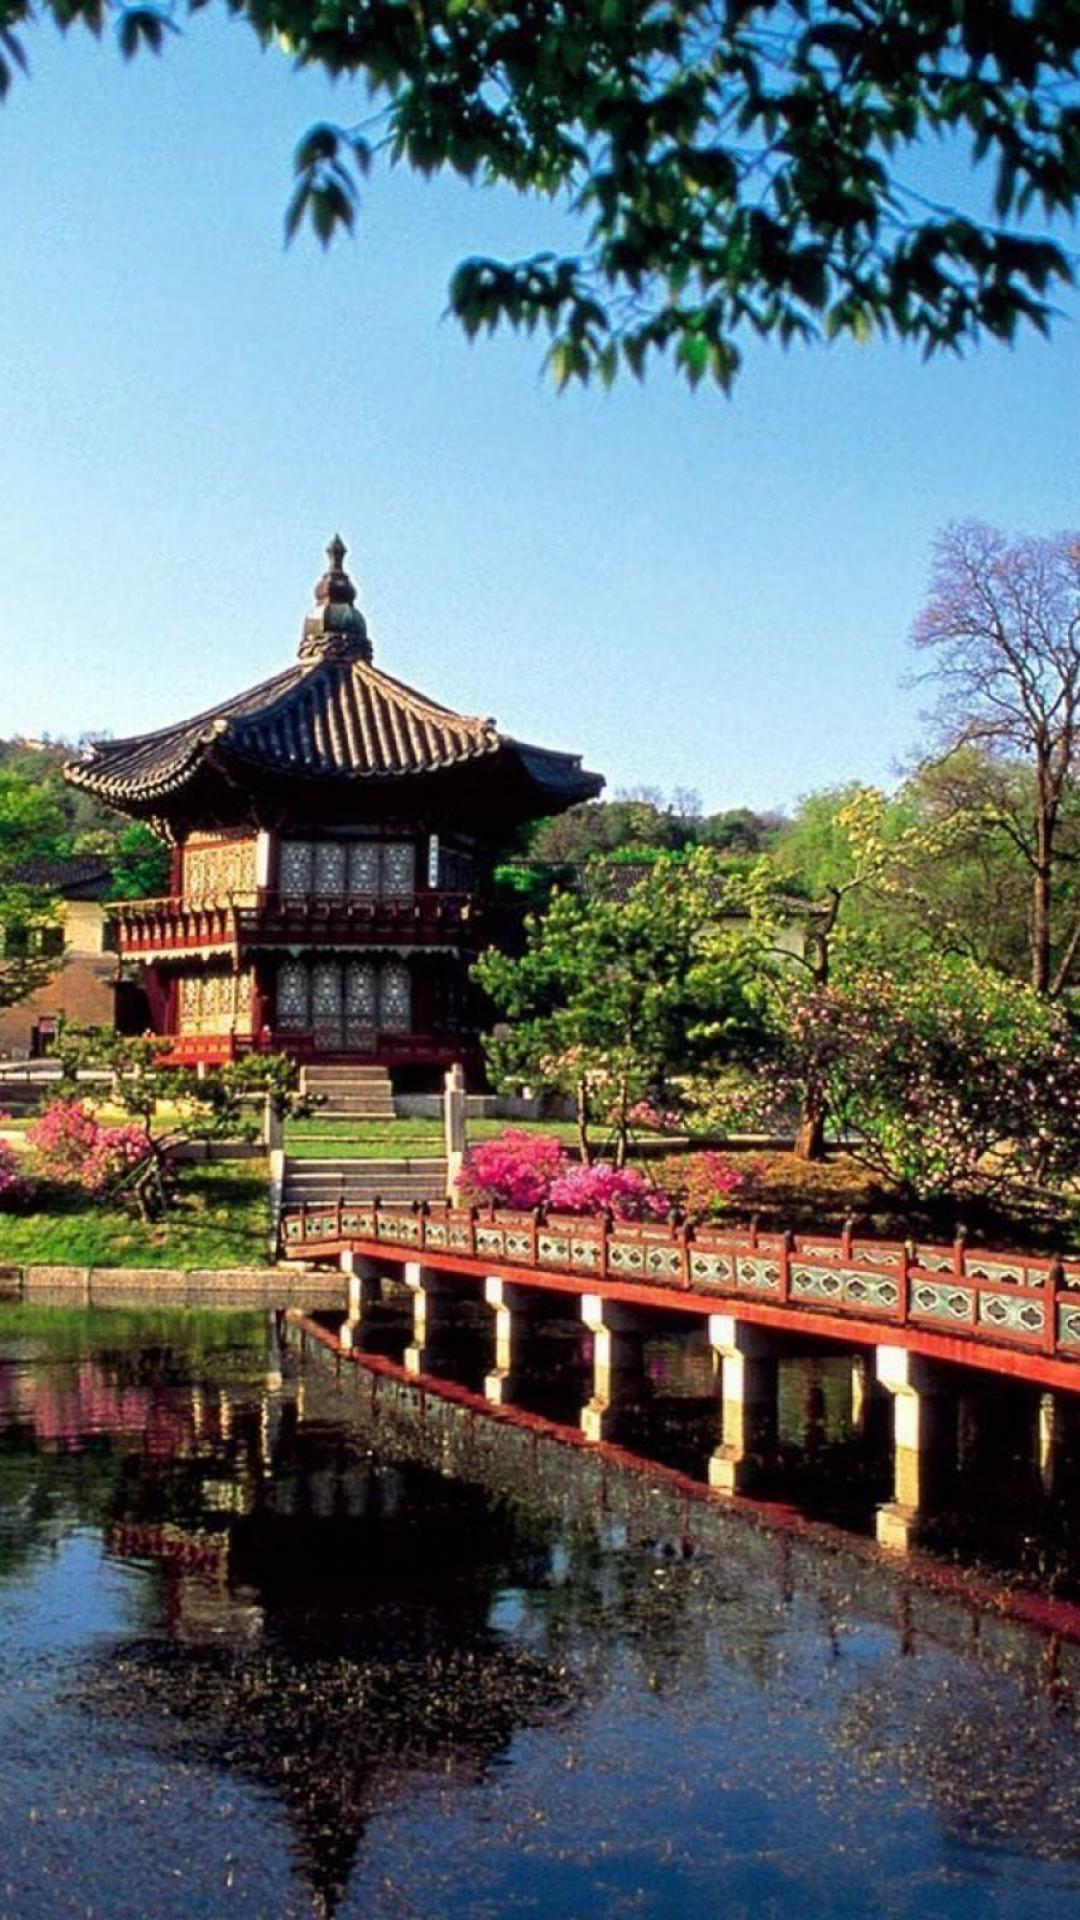 서울 배경 아이폰,중국 건축,자연 경관,건축물,일본 건축,물